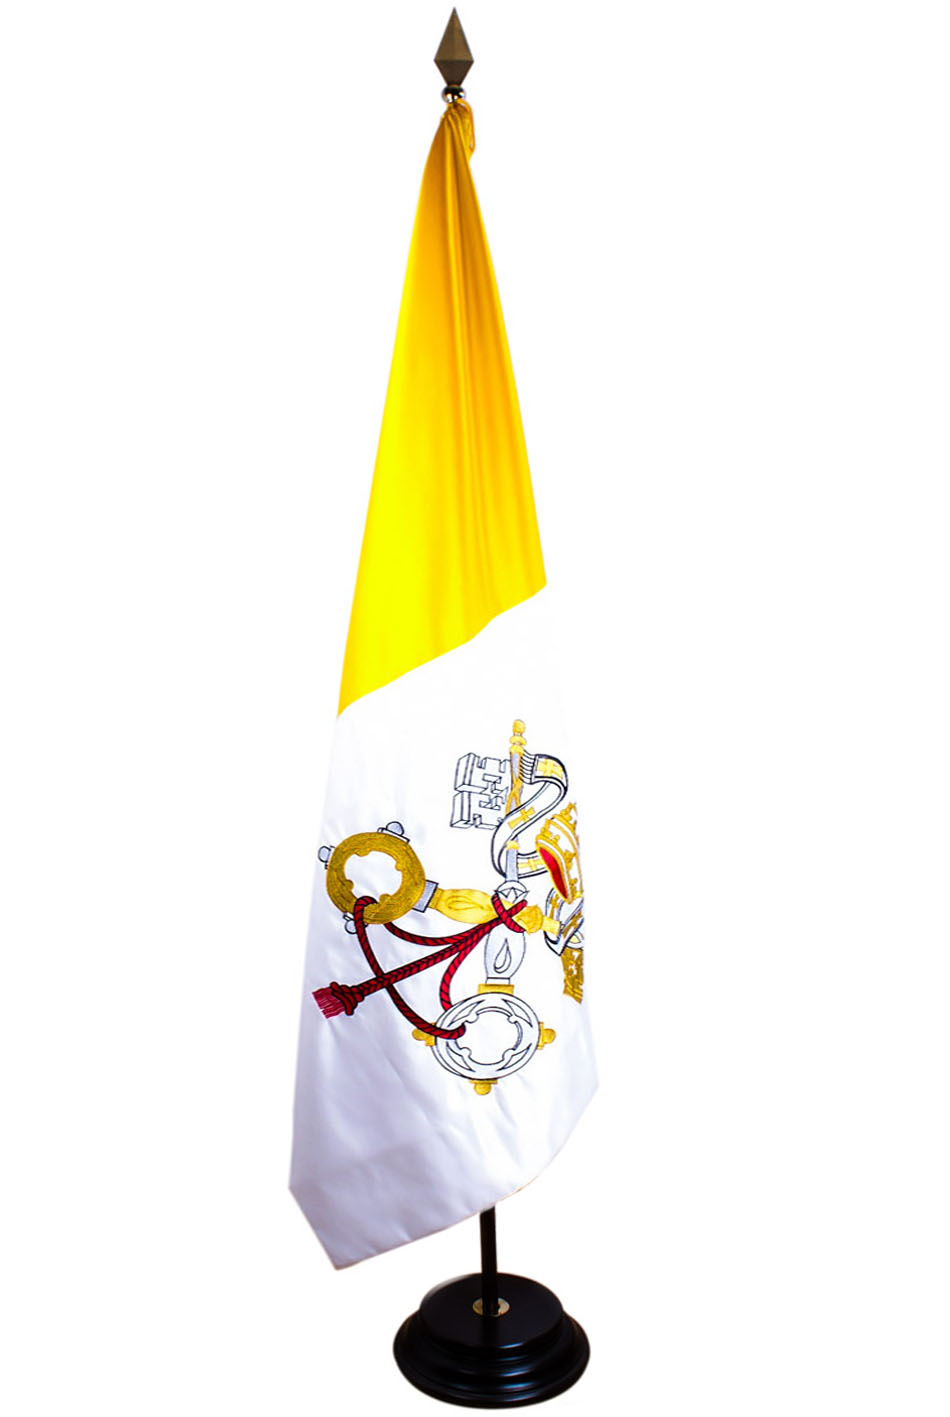 Bandera del Vaticano con el escudo bordado a mano en raso de alta calidad con medidas de 1,50 x 1,00 metros.